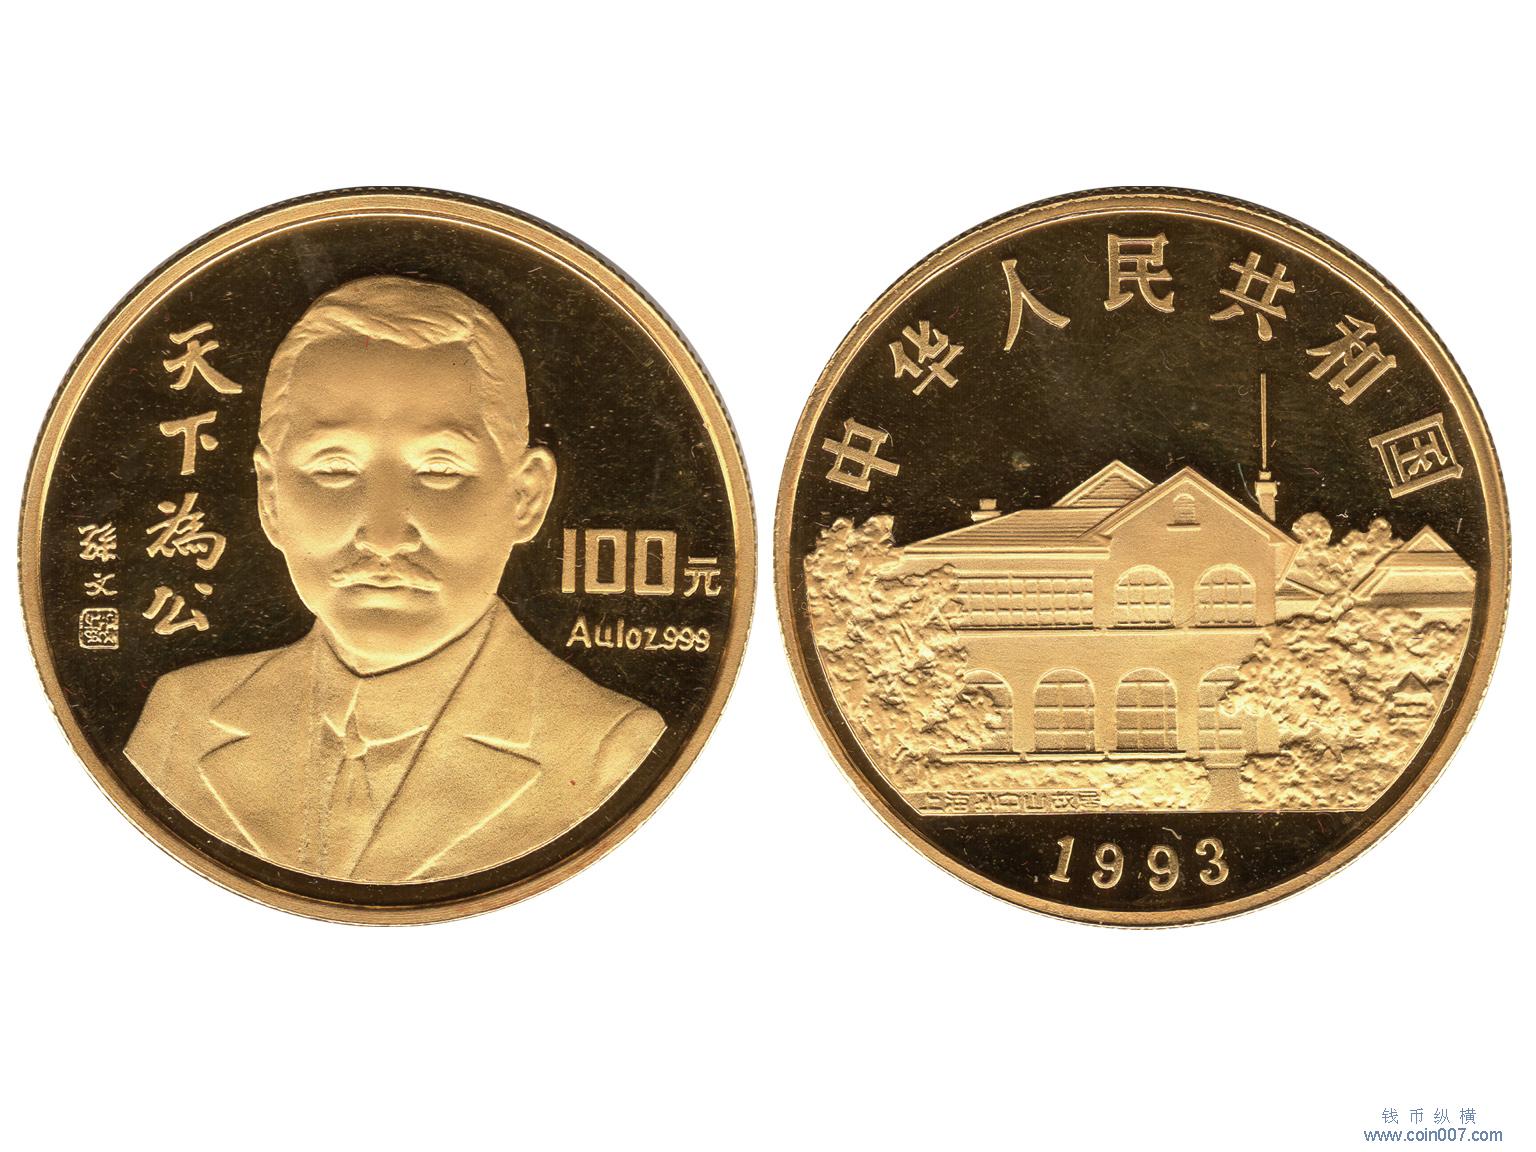 765 1993年孙中山精制金币——天下为公,面值100元